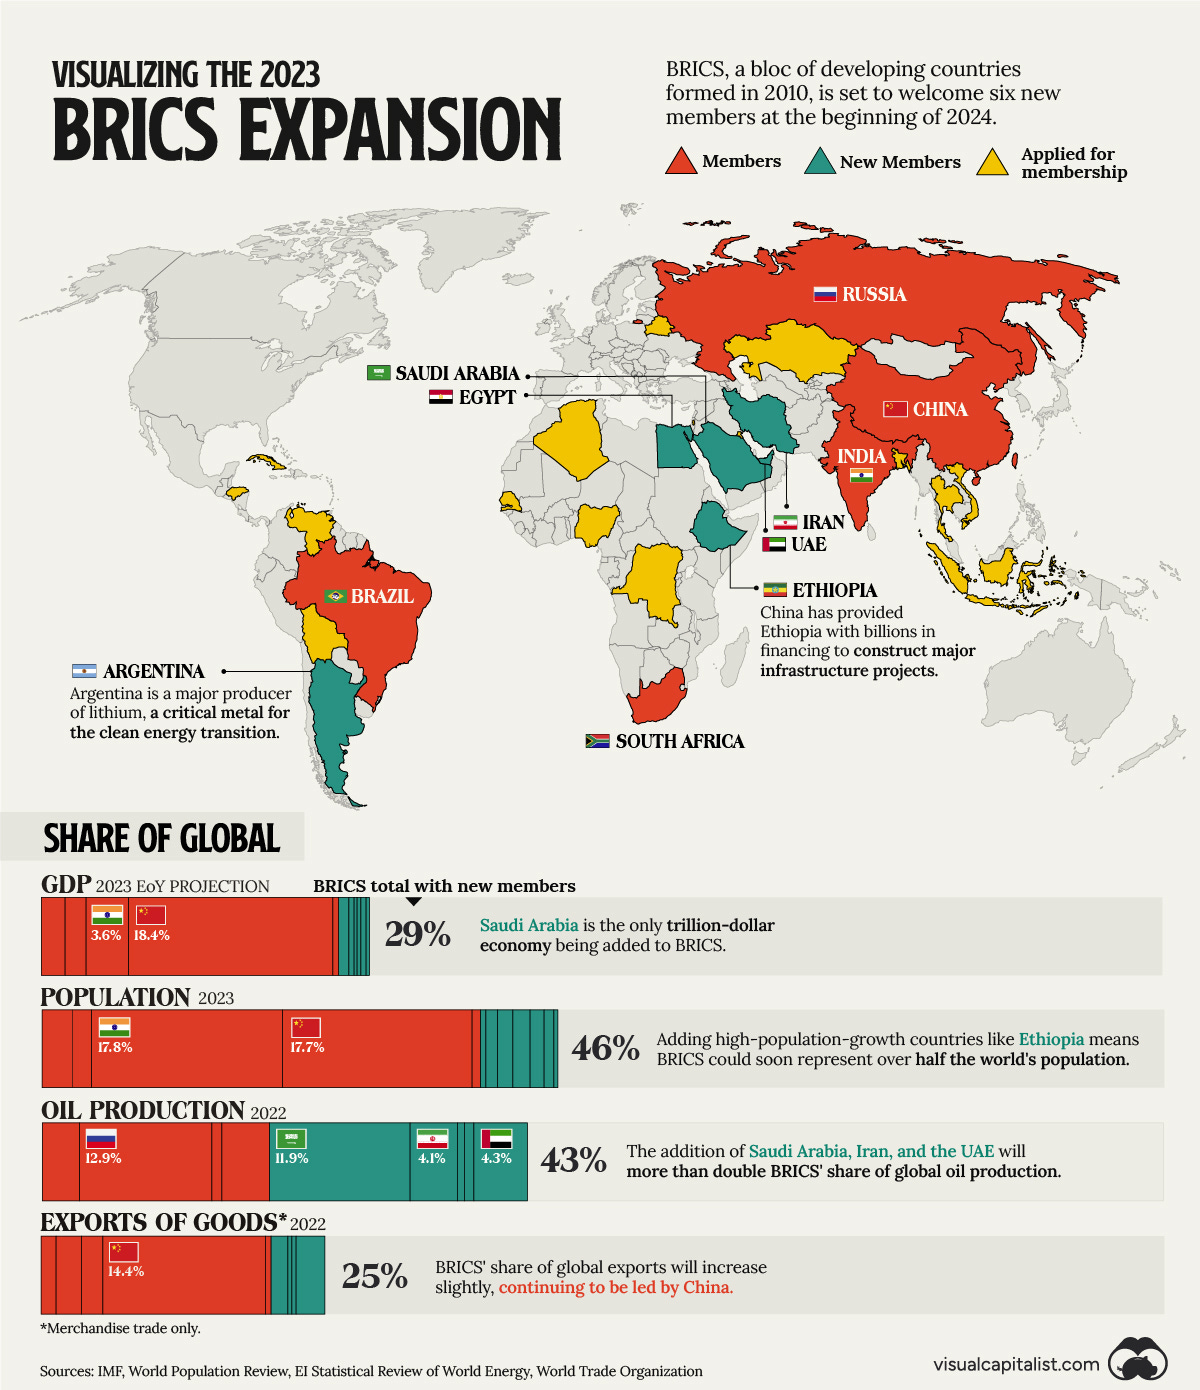 Ilustración de Visual Capitalist sobre la expansión de los BRICS